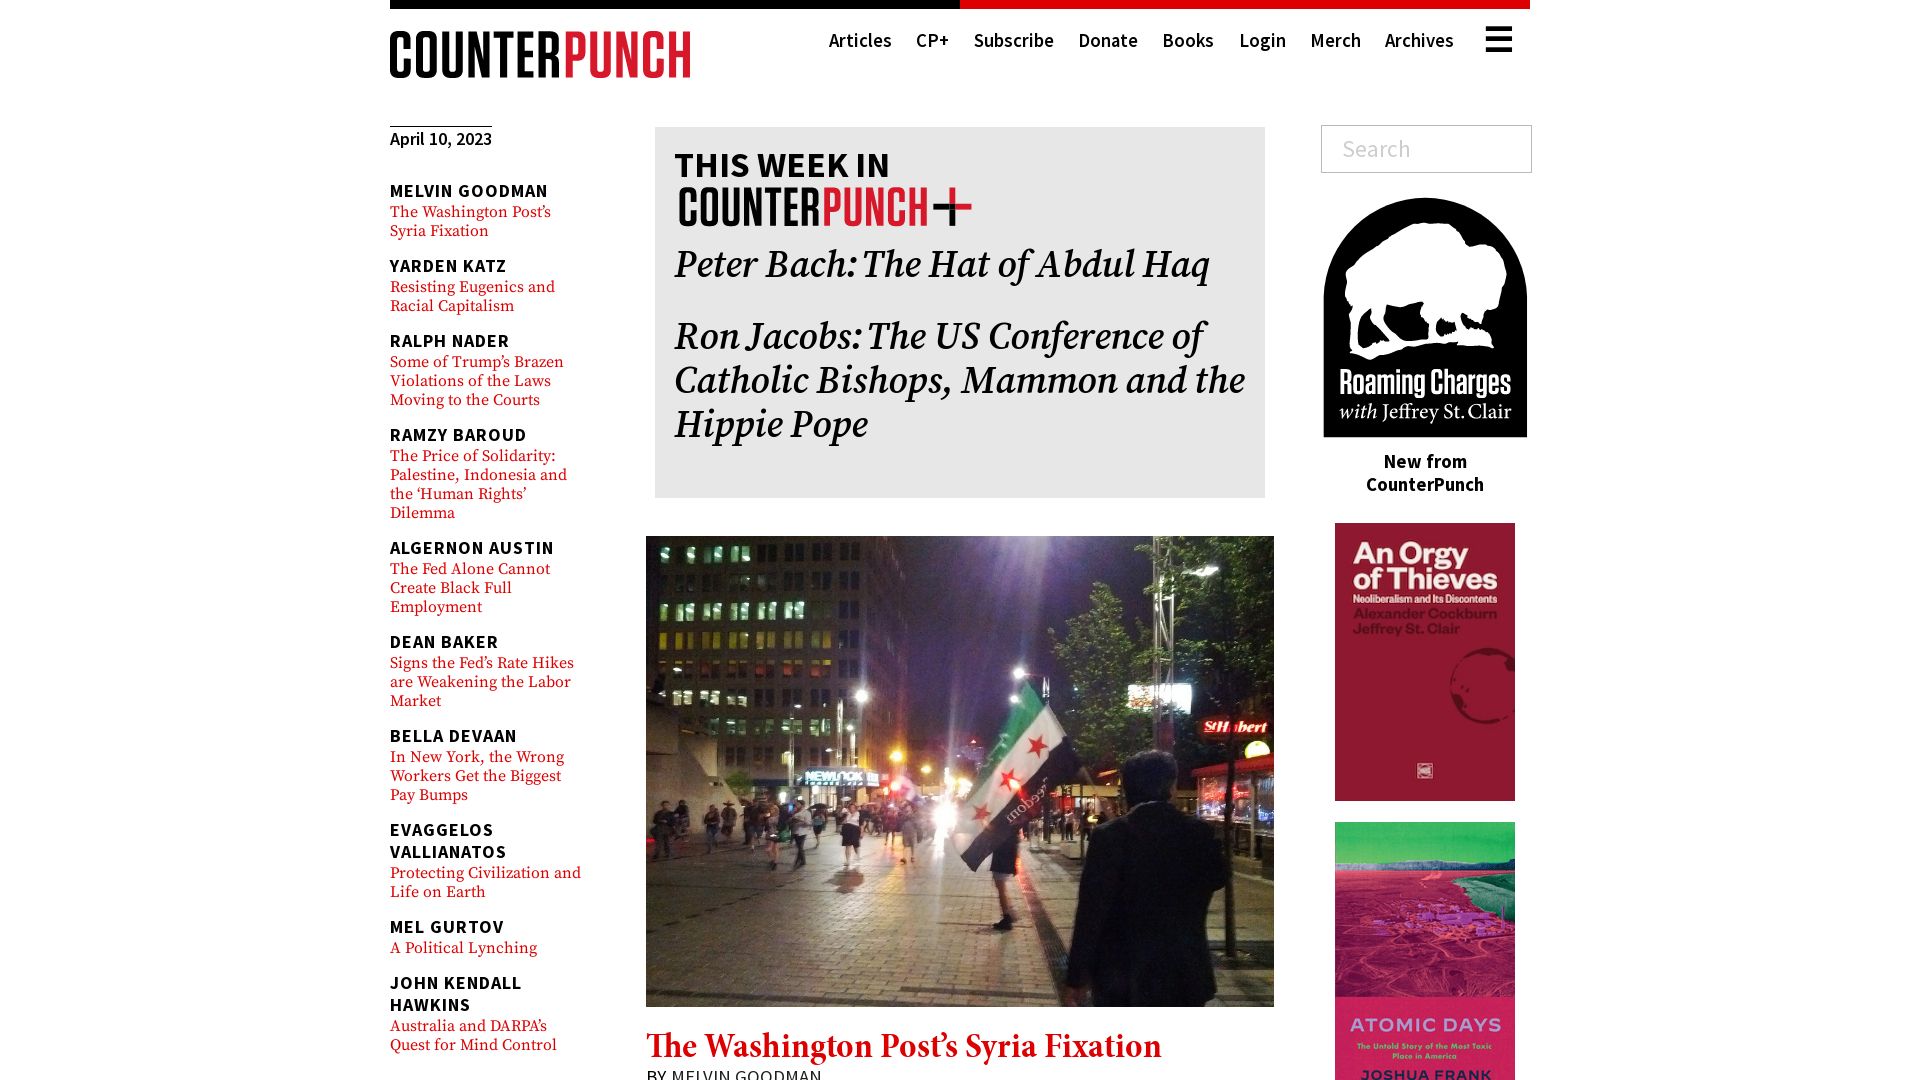 Estado web counterpunch.org está   ONLINE